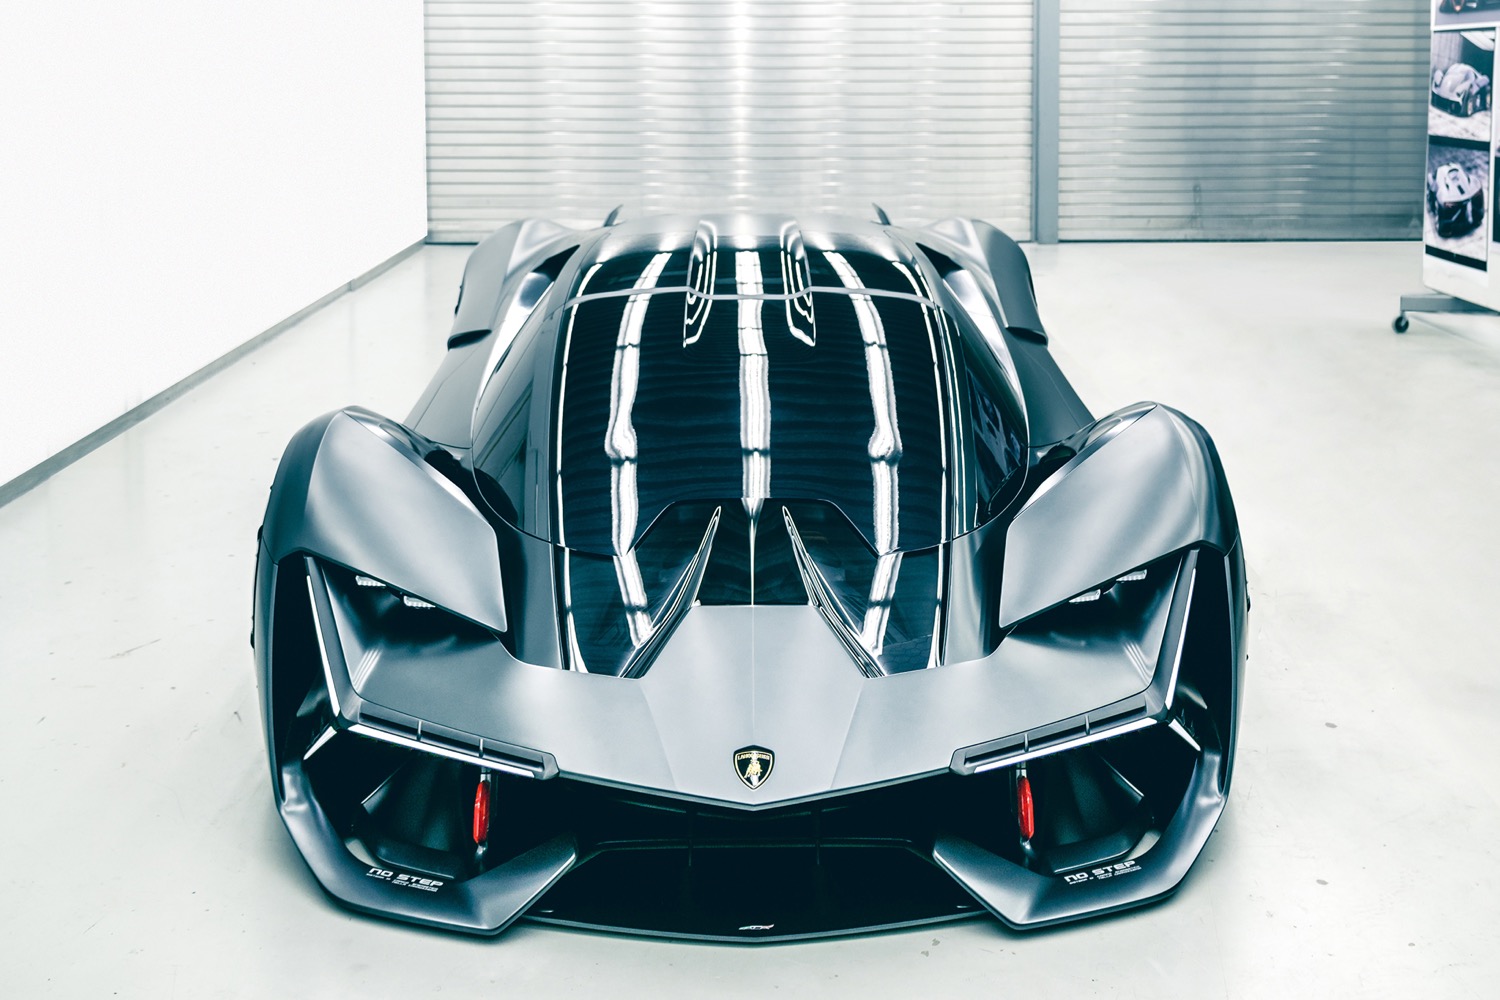 Lamborghini Terzo Millenio concept